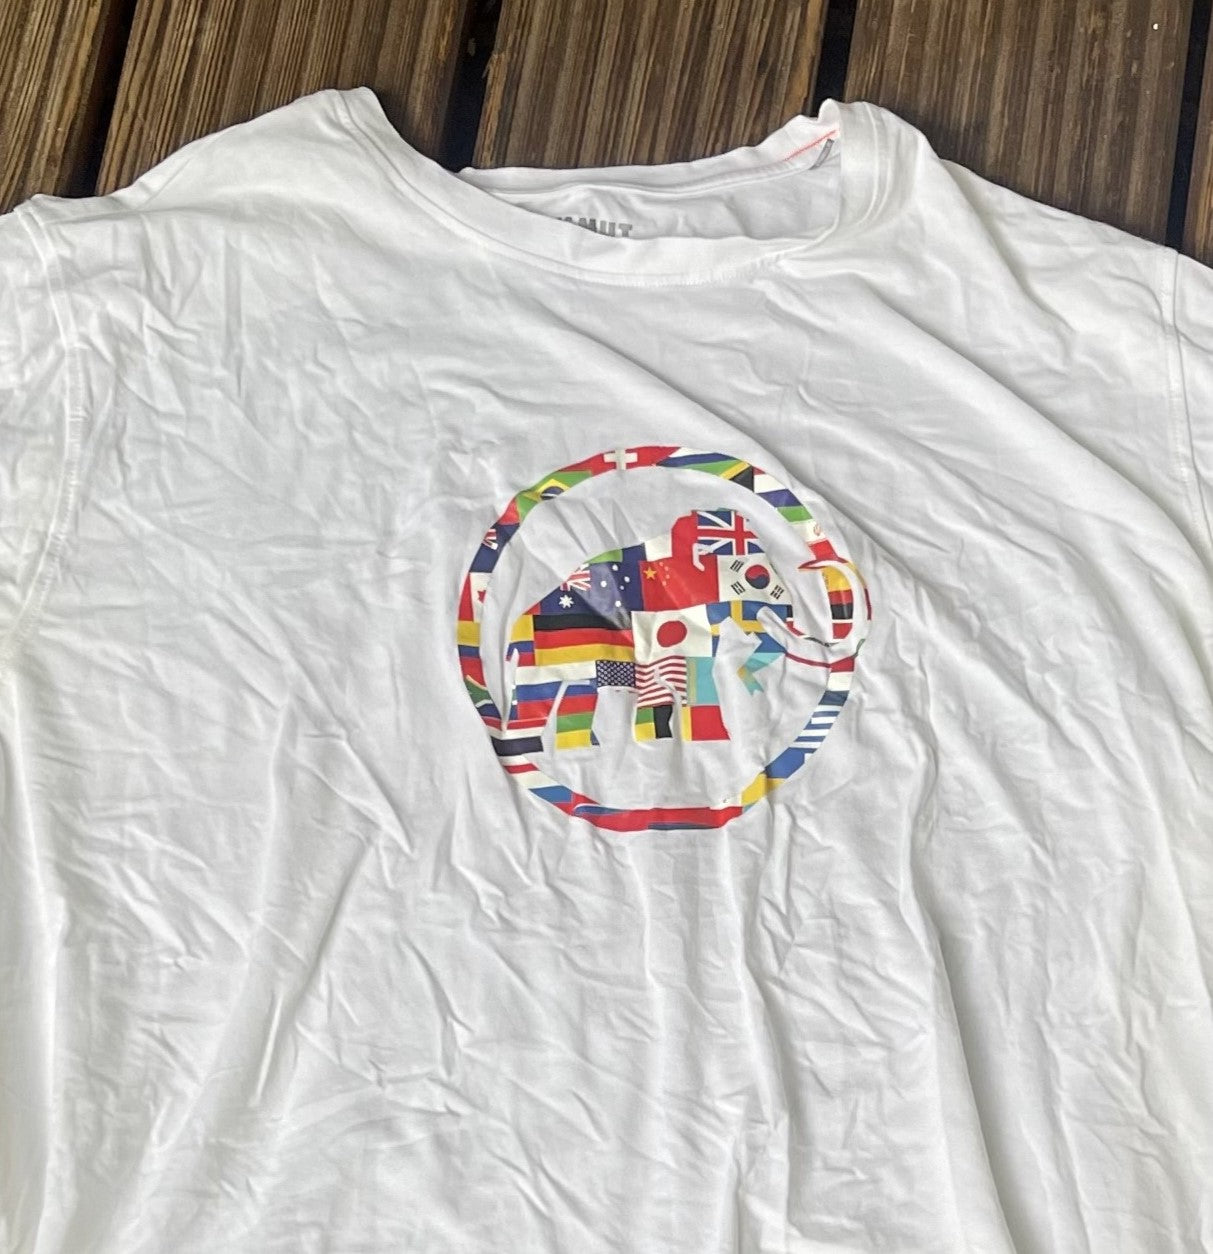 Mammut T-Shirt (Herren XXL) weiß mit Brust-Logo